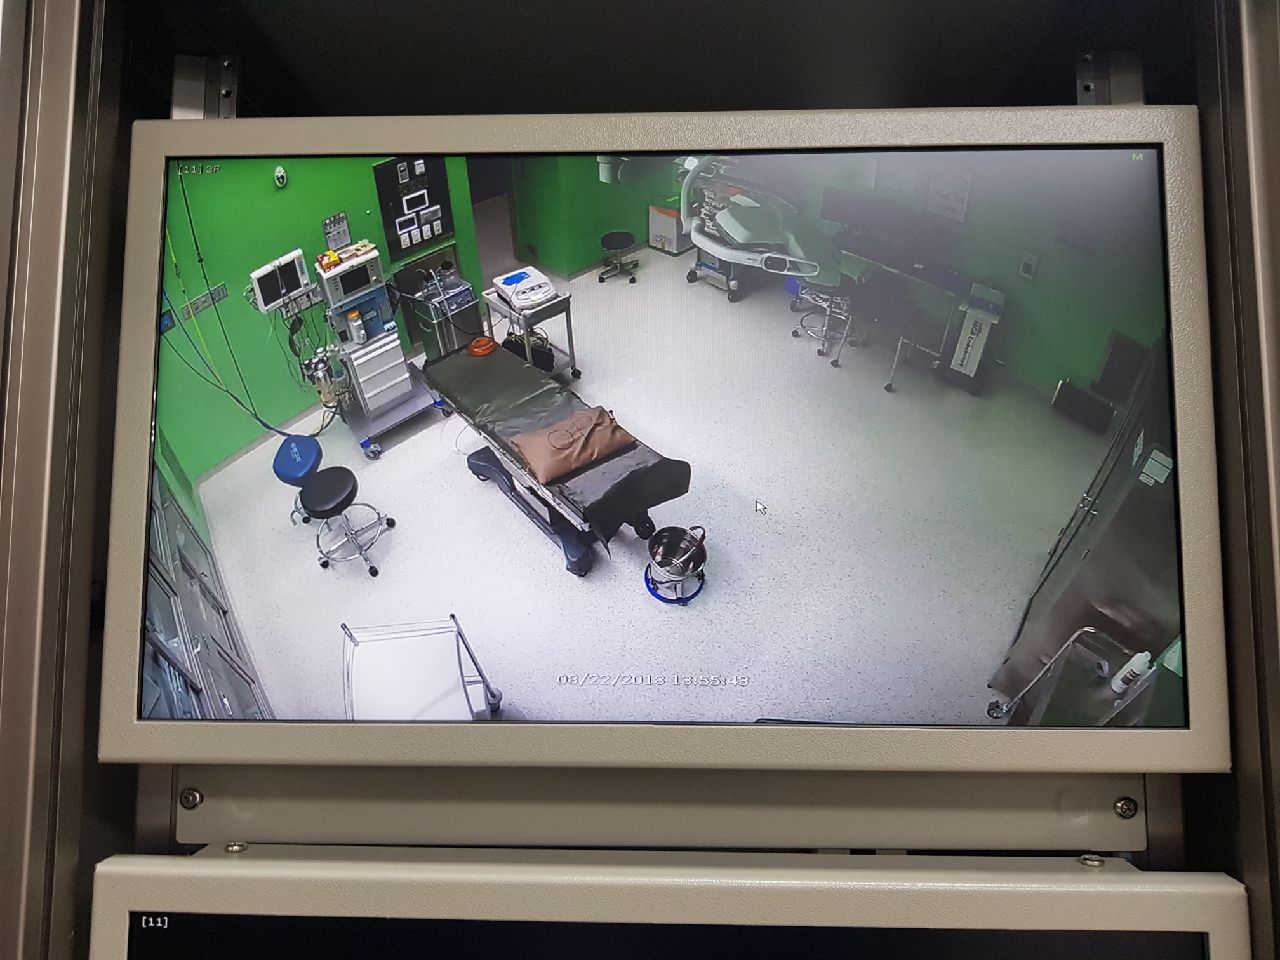 경기도의료원 안성병원 수술실에 설치된 CCTV 녹화장치 